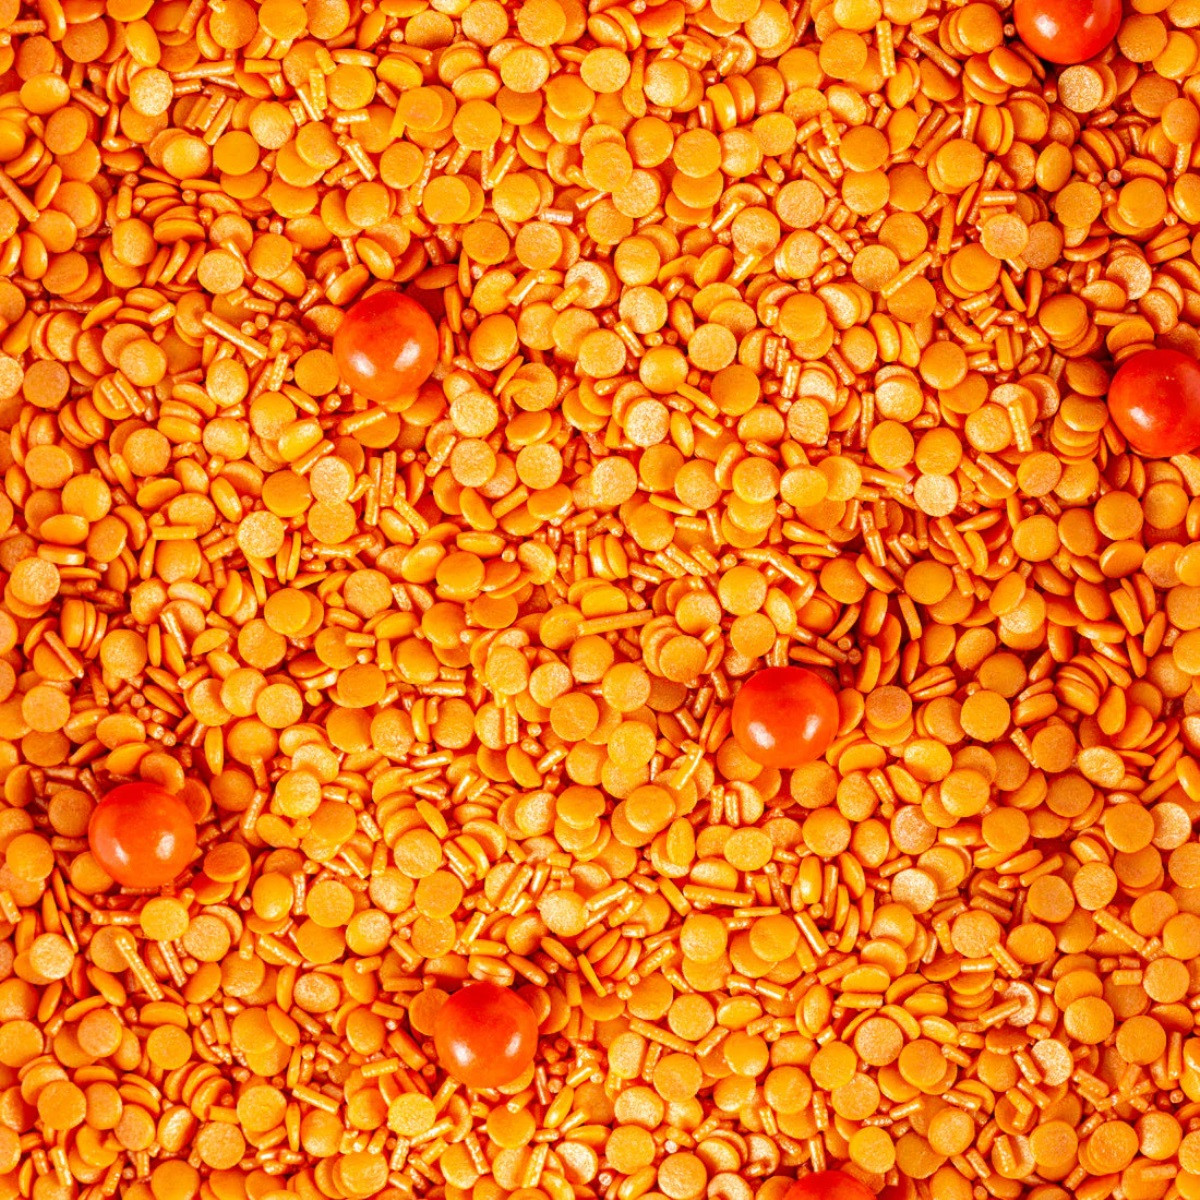 SuperStreusel Sprinkles Oranje 90g